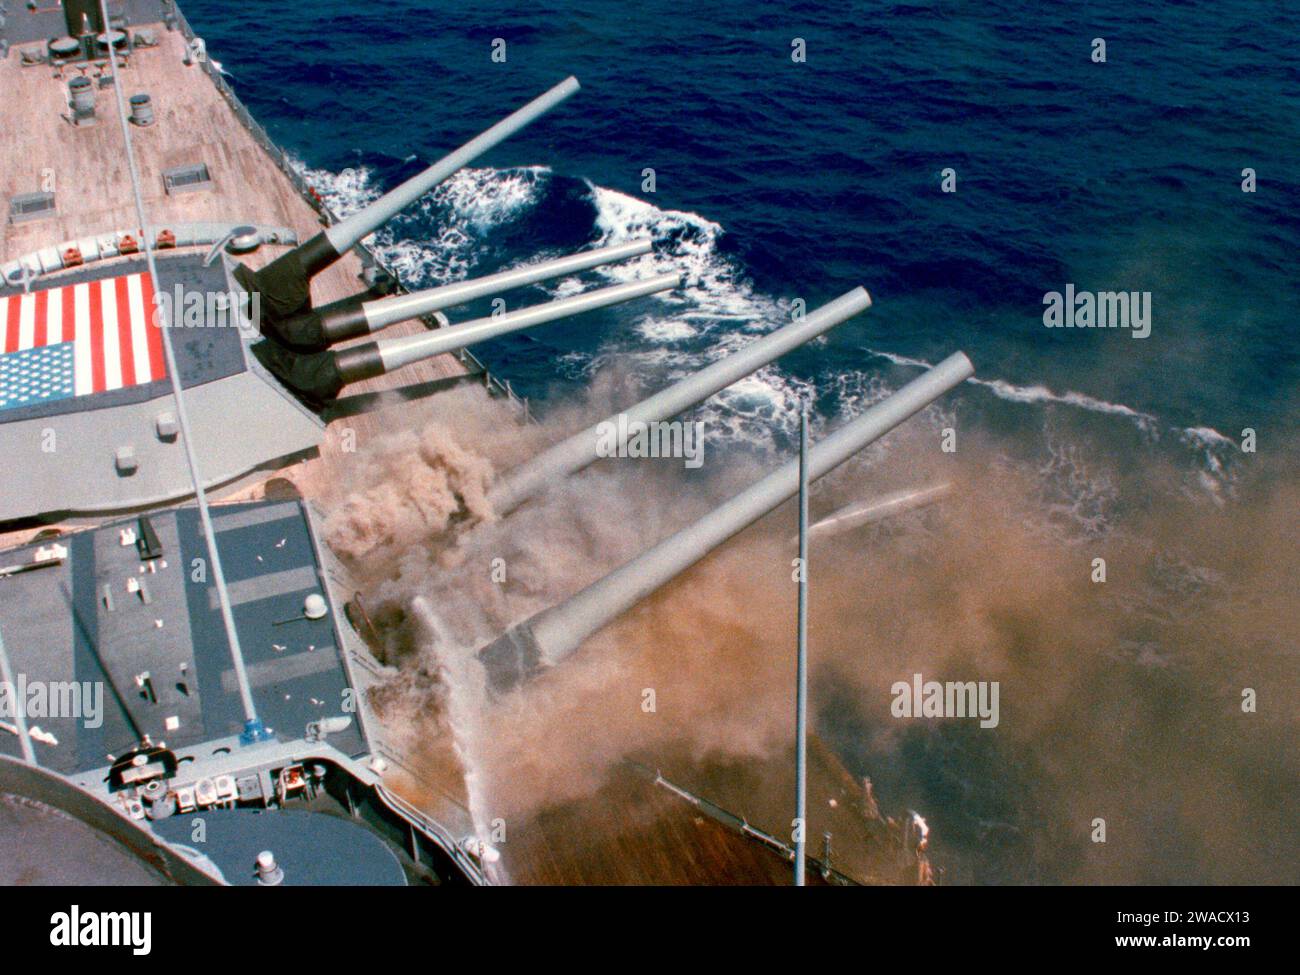 Der 2. Turm der USS Iowa (BB-61) explodierte am 19. April 1989 und tötete 47 Mitglieder der Turmbesatzung. Die linke Kanone von Turret One im Hintergrund ist vollständig angehoben, während die Besatzung versucht, eine Fehlzündung zu beseitigen, die früher aufgetreten ist, indem sie versucht, die Pulverbeutel dazu zu bringen, rückwärts gegen die Primer zu gleiten 19. April 1989 Stockfoto